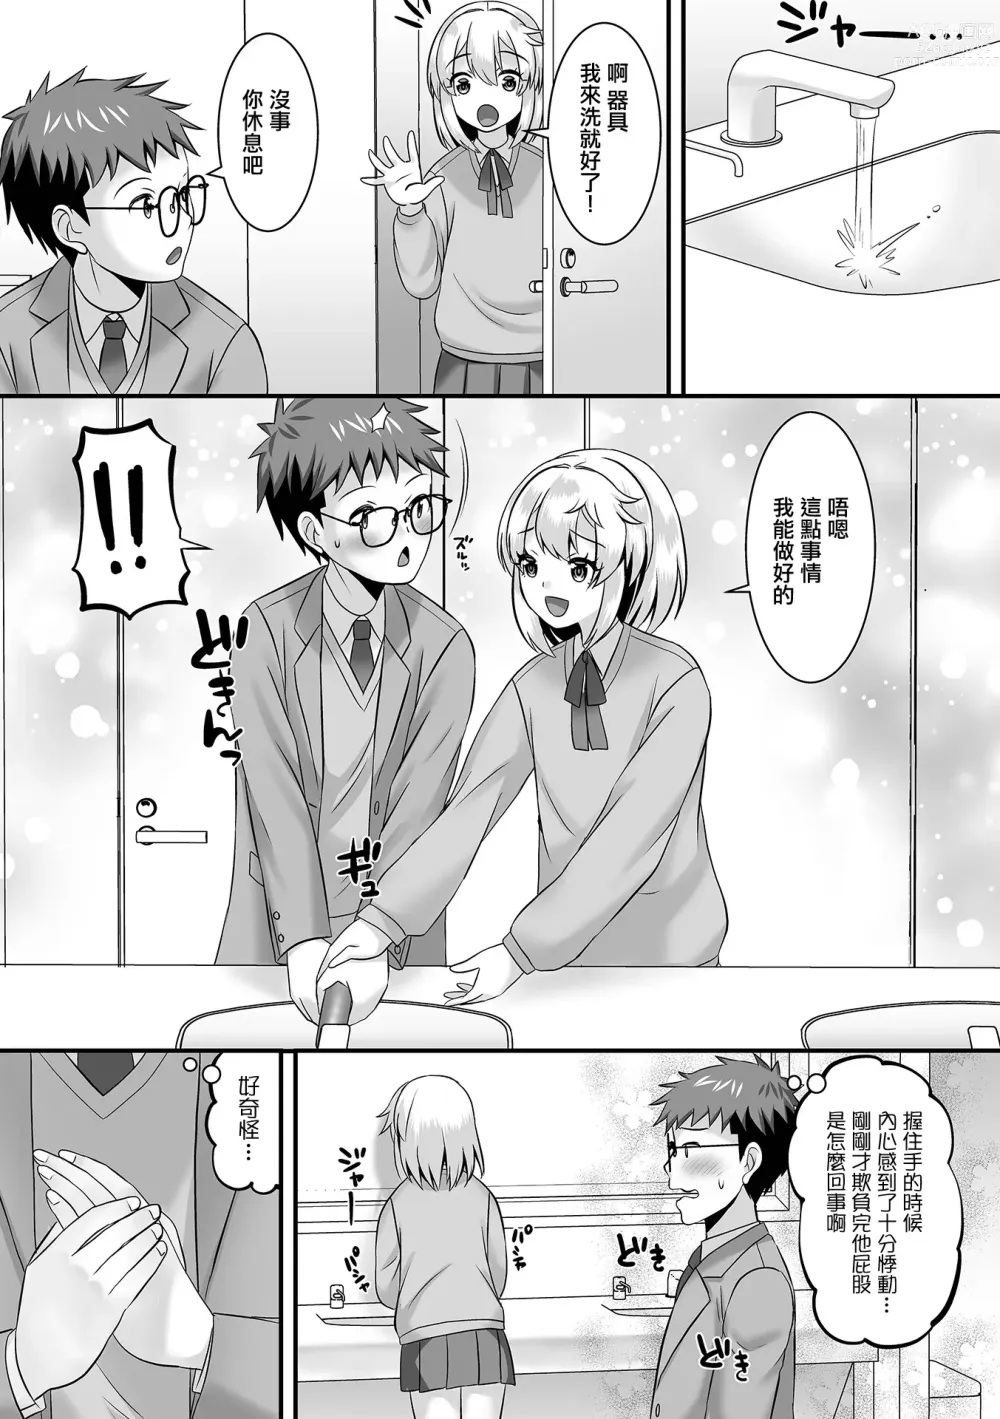 Page 3 of manga 湊君的屁股負責人